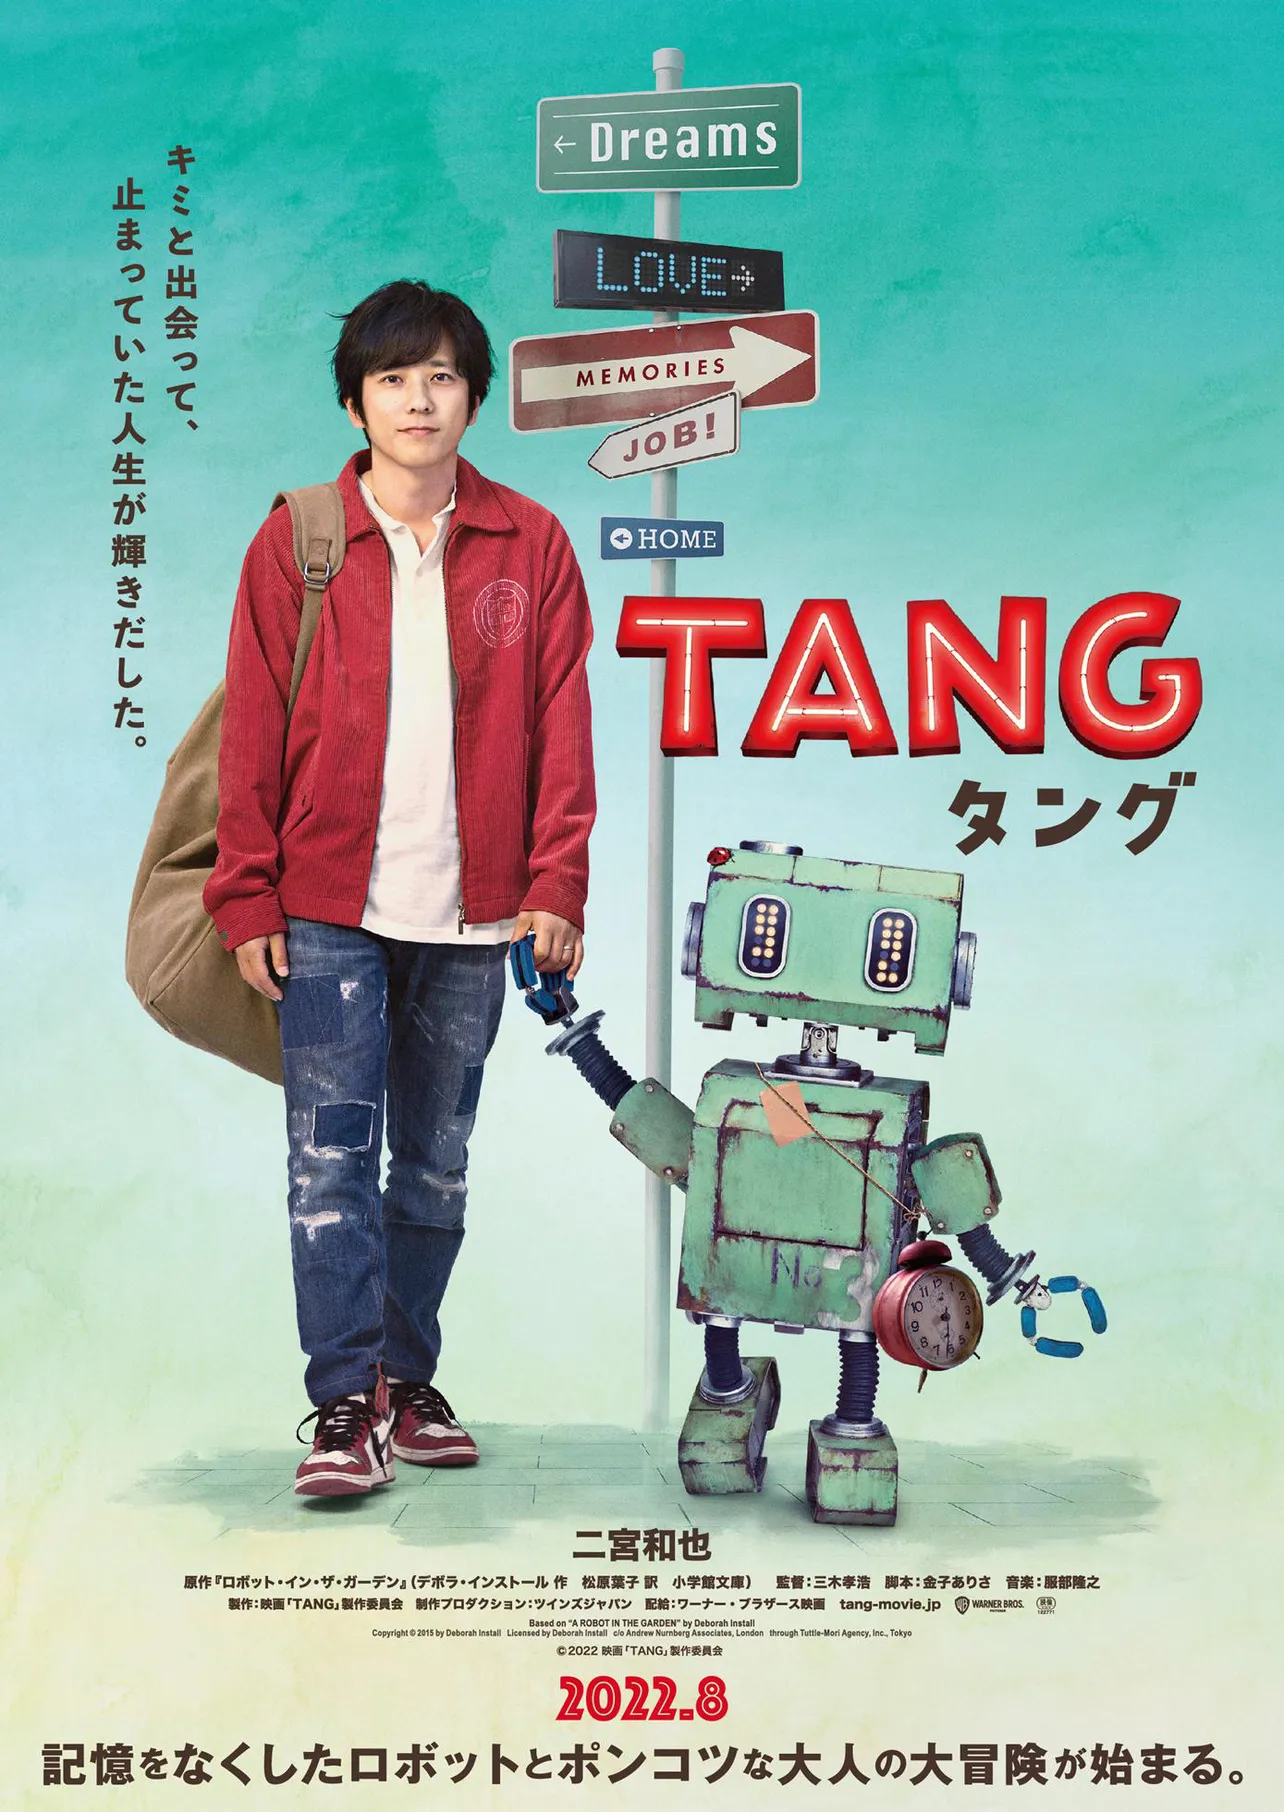 二宮和也主演映画「TANG タング」の第1弾チラシビジュアル